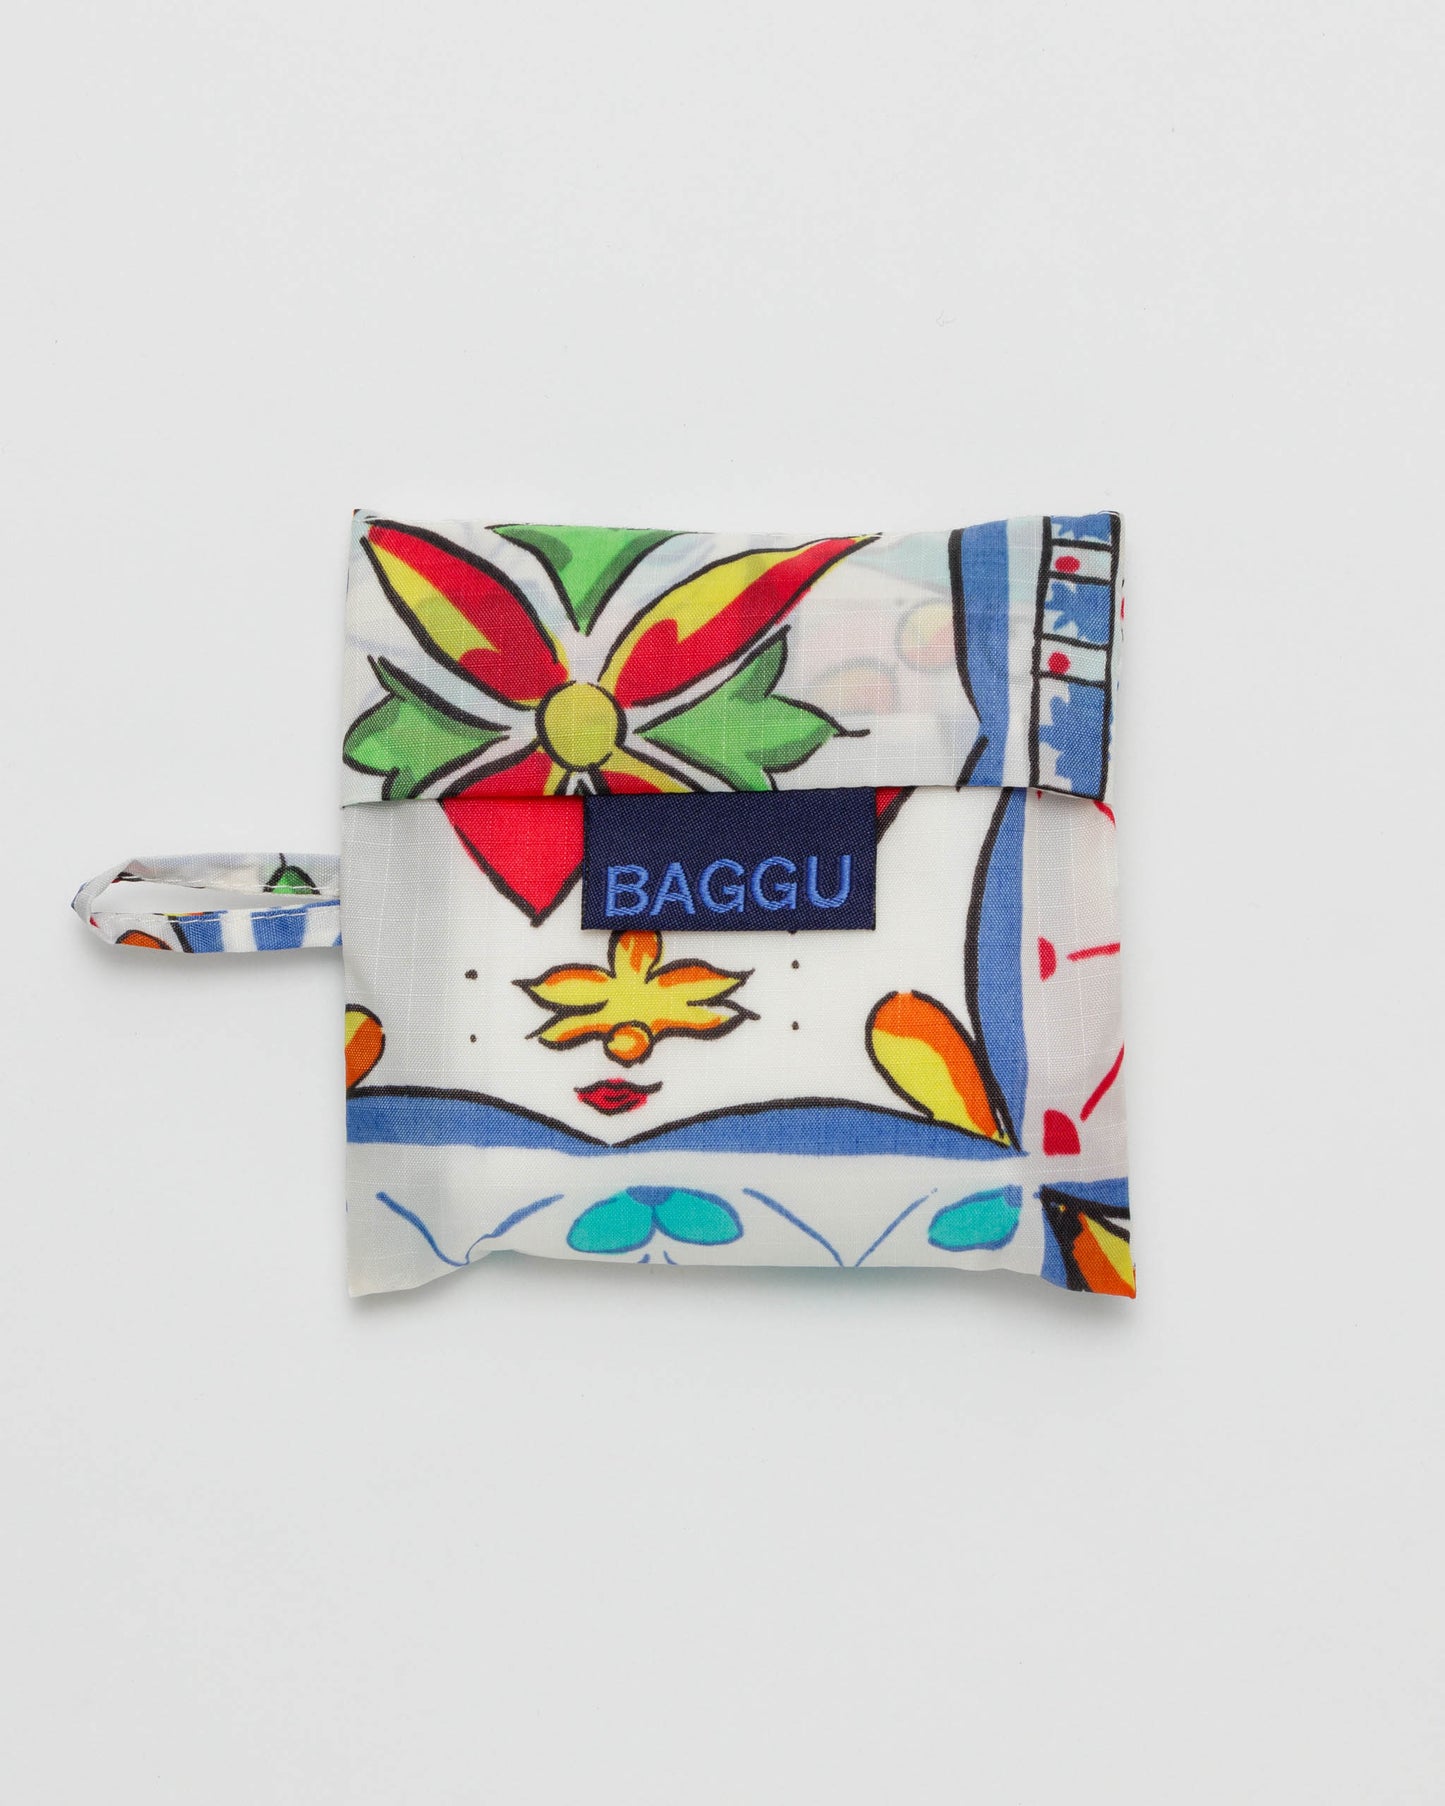 Baby BAGGU Reusable Bag - Sunshine Tile | RALLY RALLY Singapore